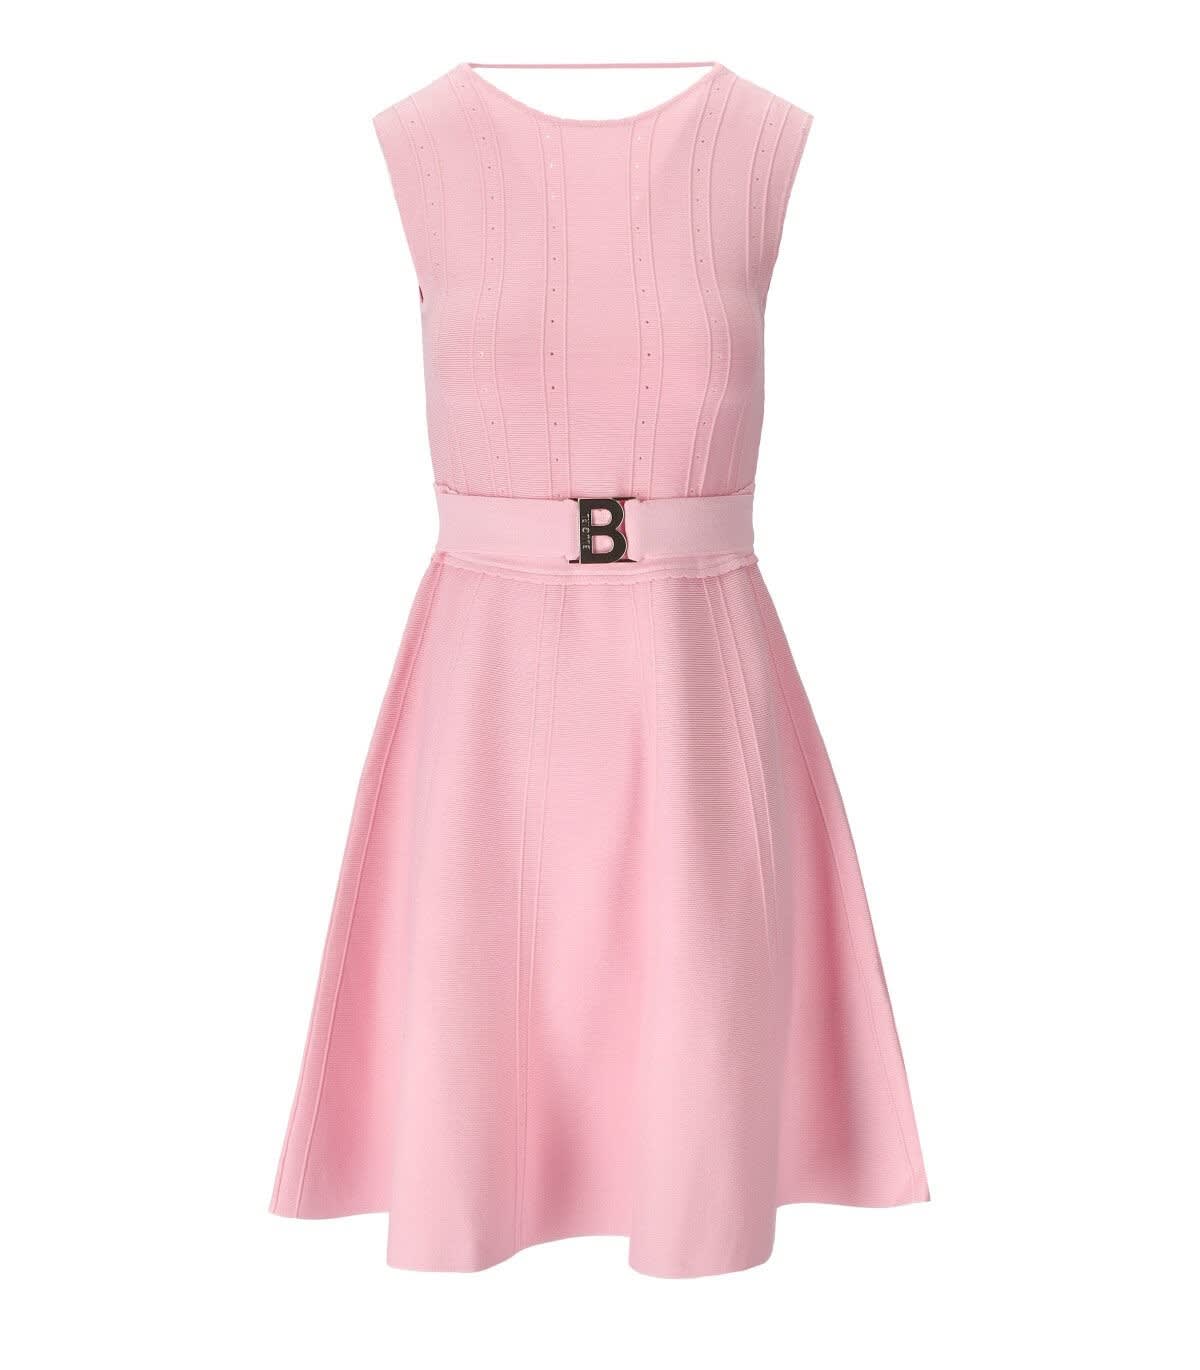 Shop Blugirl Pink Knitted Dress